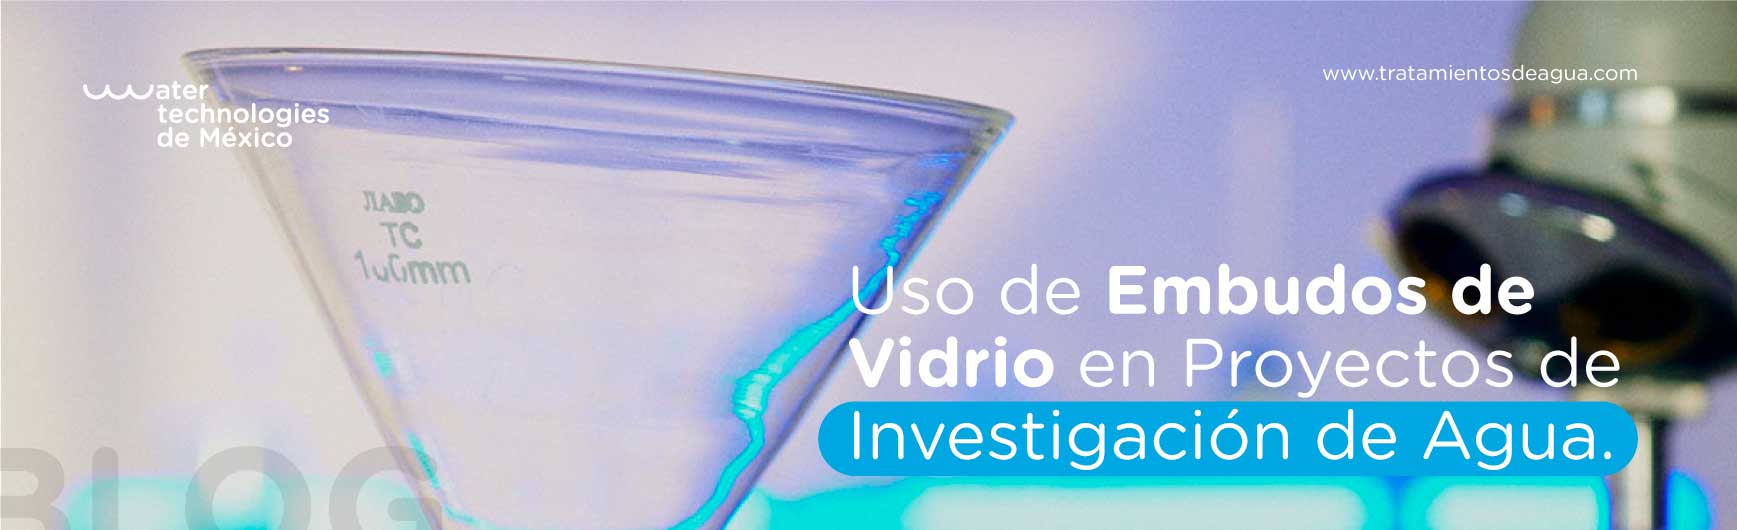 Uso de Embudos de Vidrio en Proyectos de Investigación de Agua.